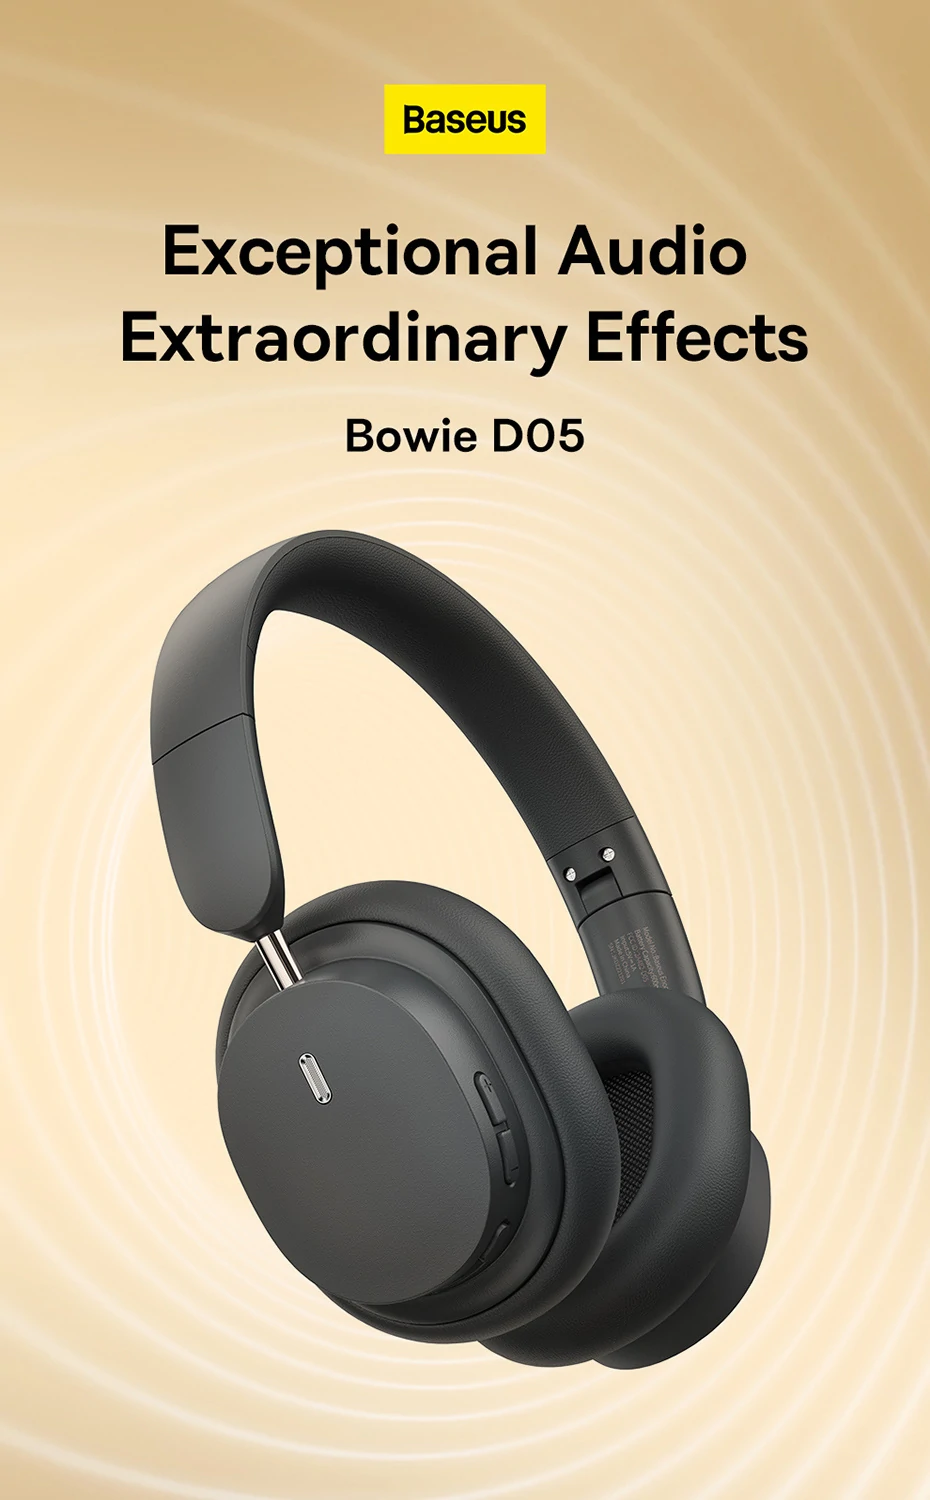 Baseus Bowie D05 Bluetooth-Kopfhörer mit spezieller 3D-Fähigkeit